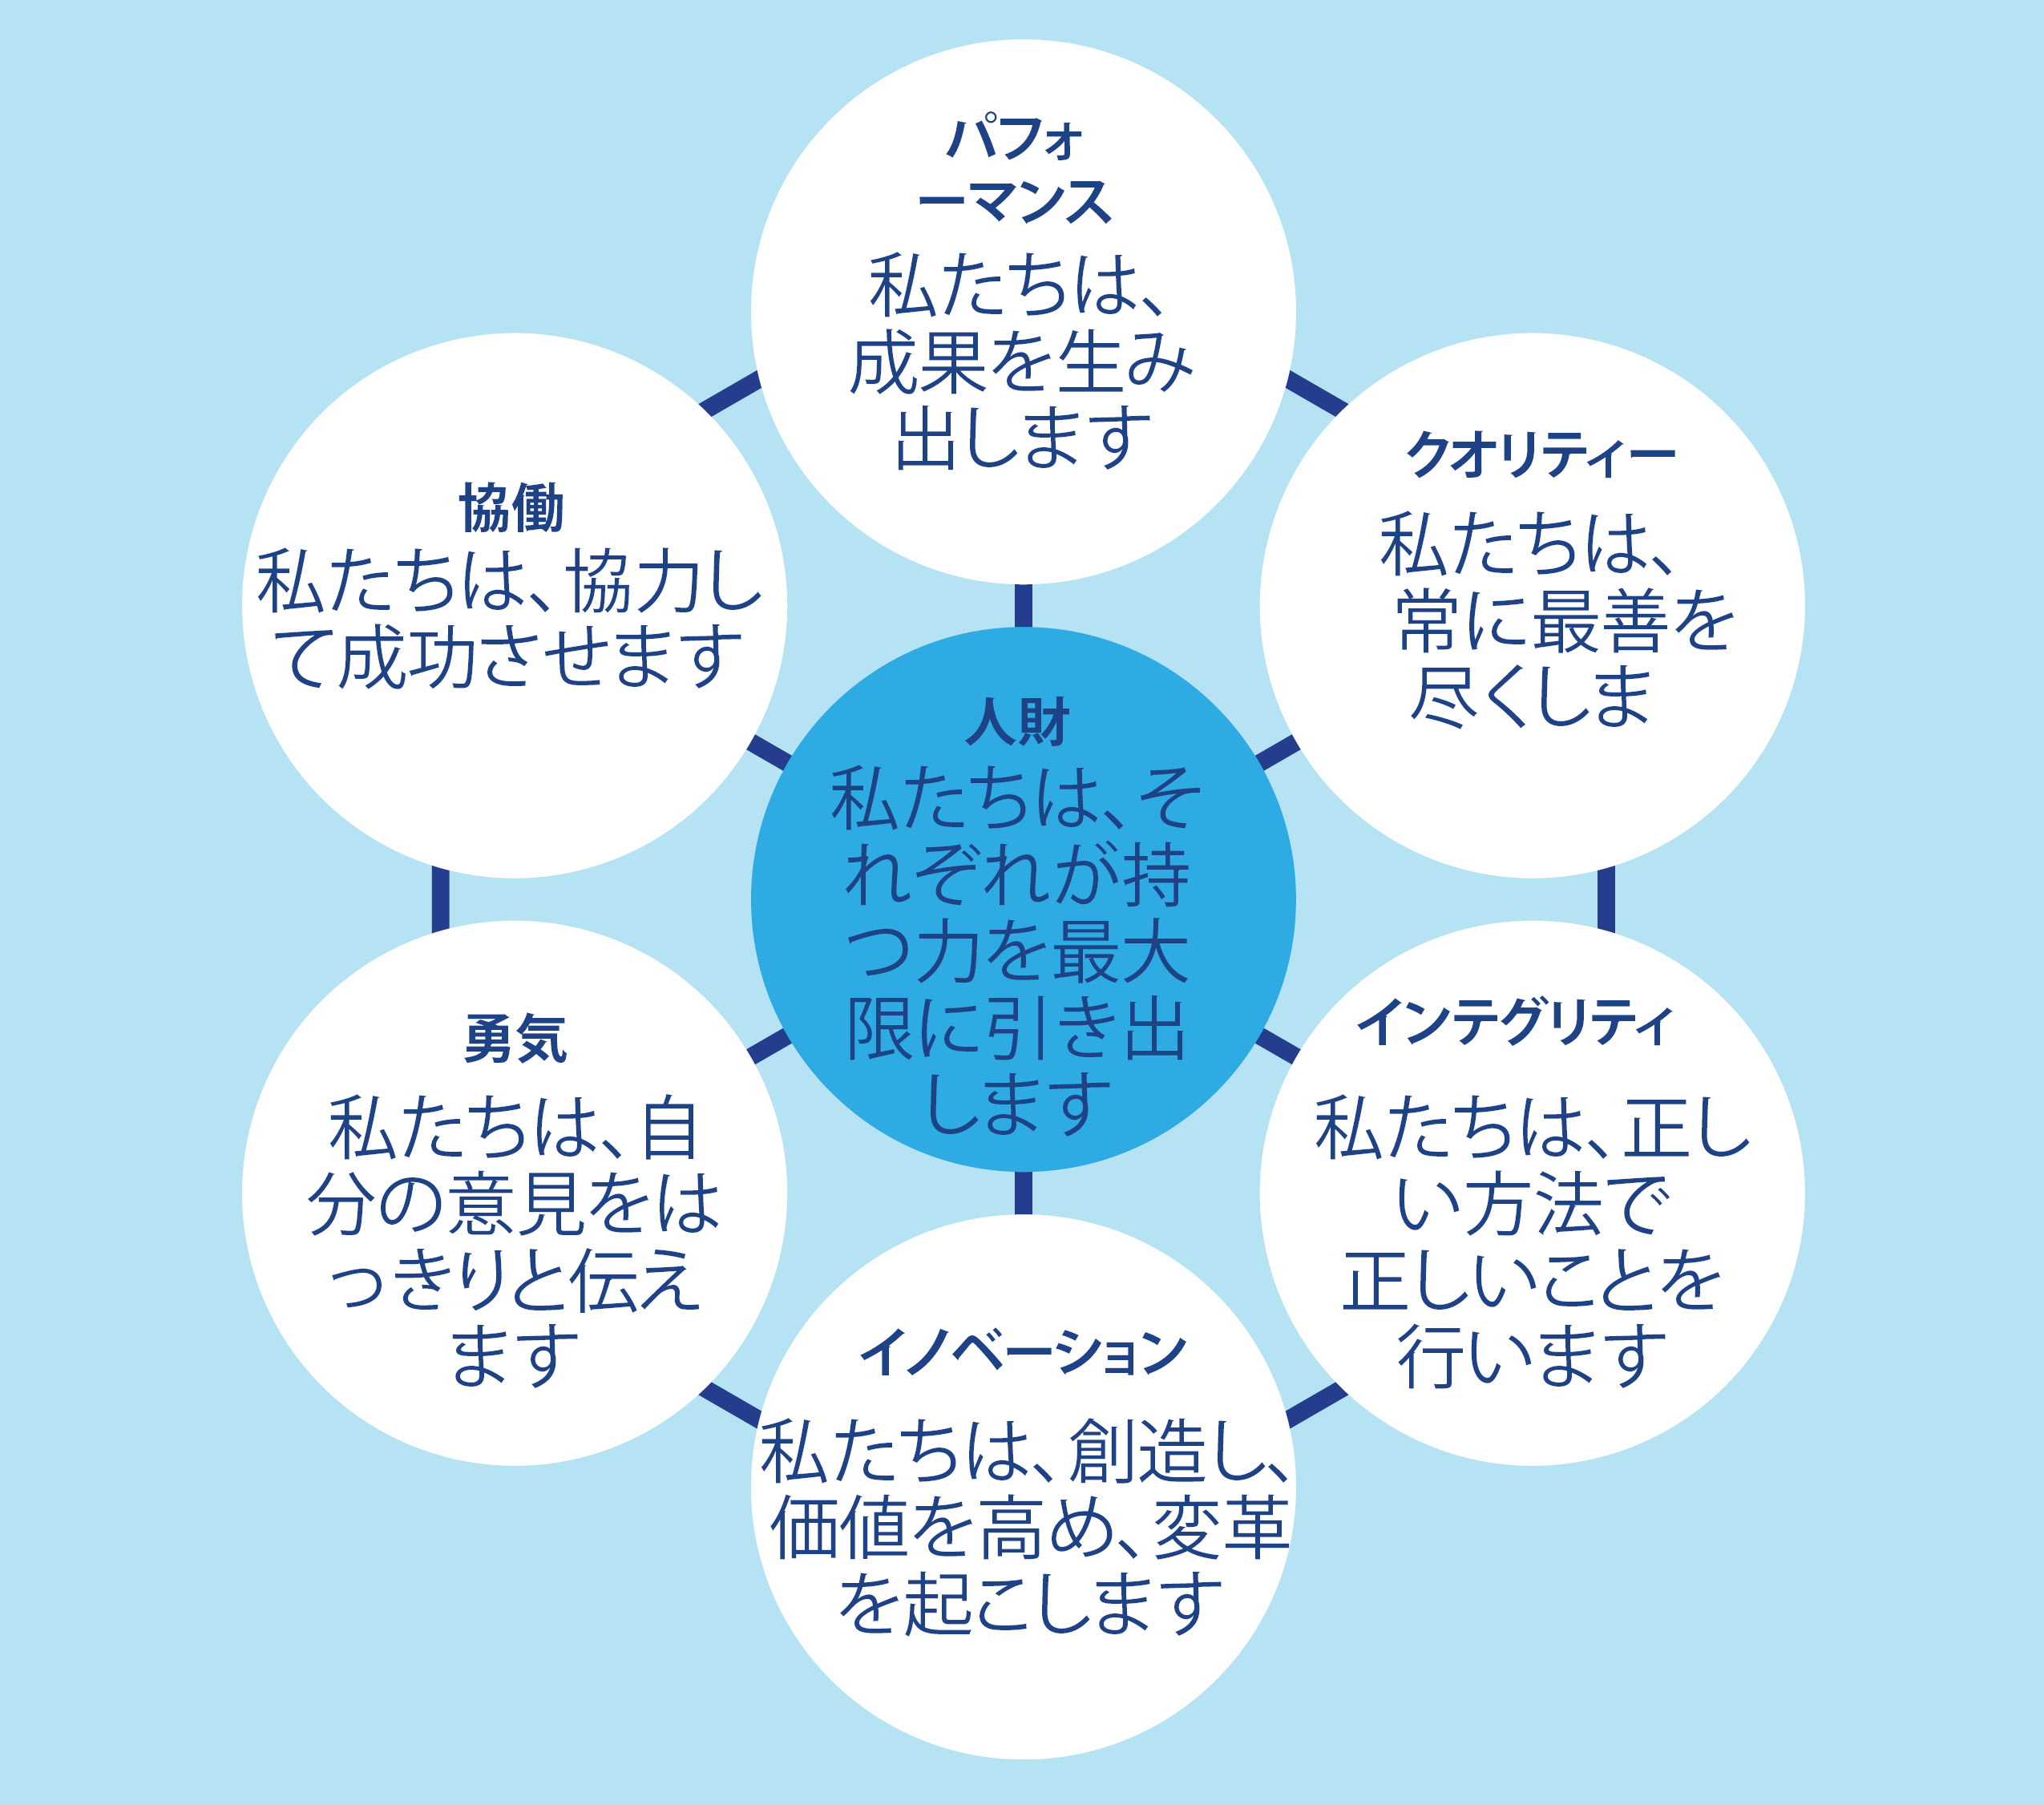 人財を中心に表示した円の周囲に、以下の6つの価値観とそれぞれの簡単な説明を記載したインフォグラフィック図。